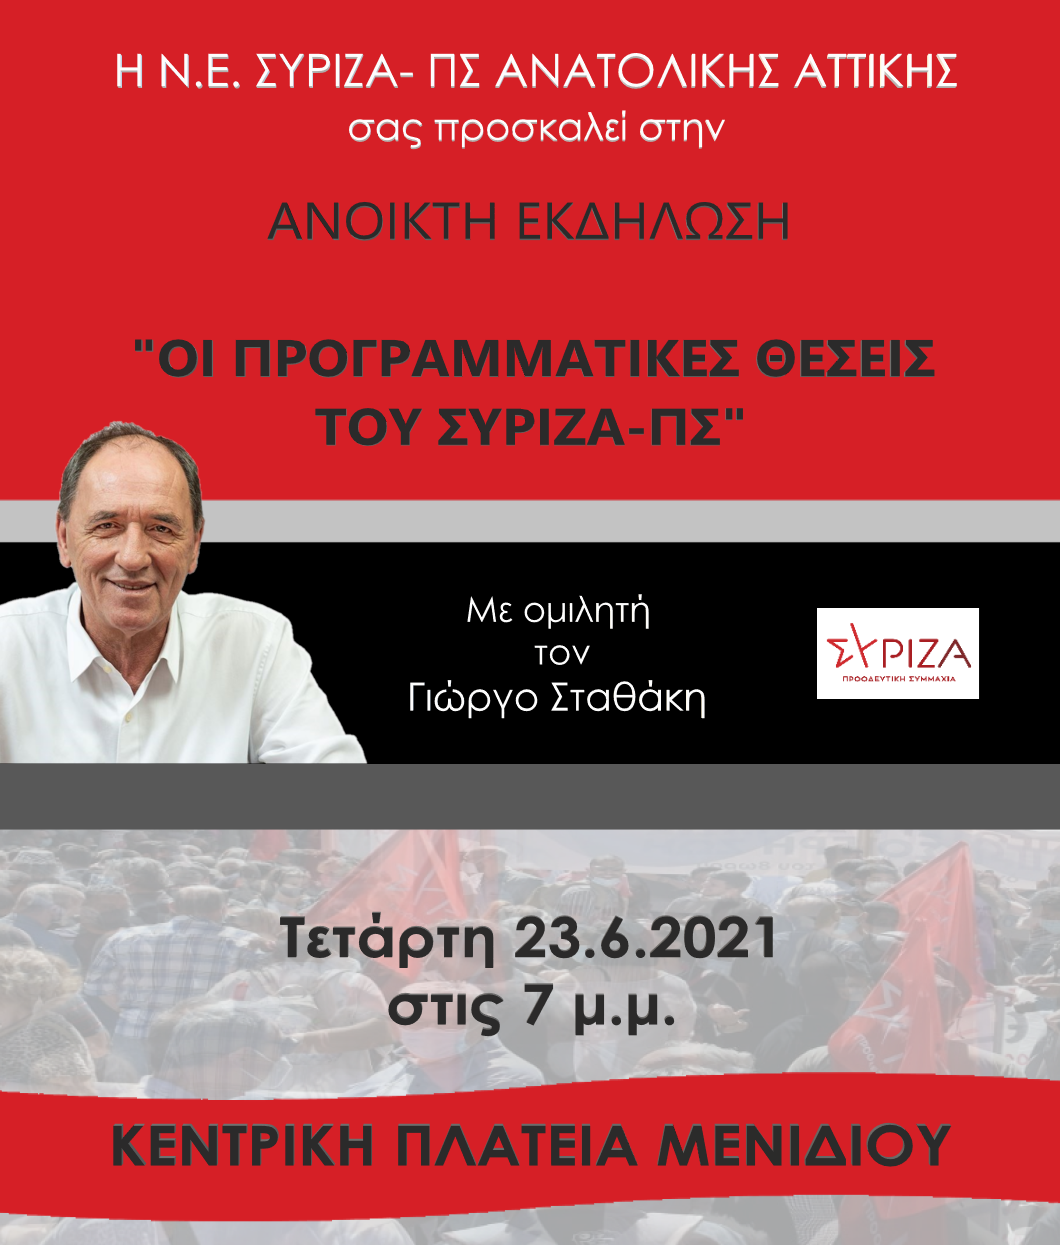 Ανοικτή Εκδήλωση του ΣΥΡΙΖΑ-ΠΣ Ανατολικής Αττικής στις 23 Ιουνίου στο Μενίδι  με ομιλητή το Γιώργο Σταθάκη